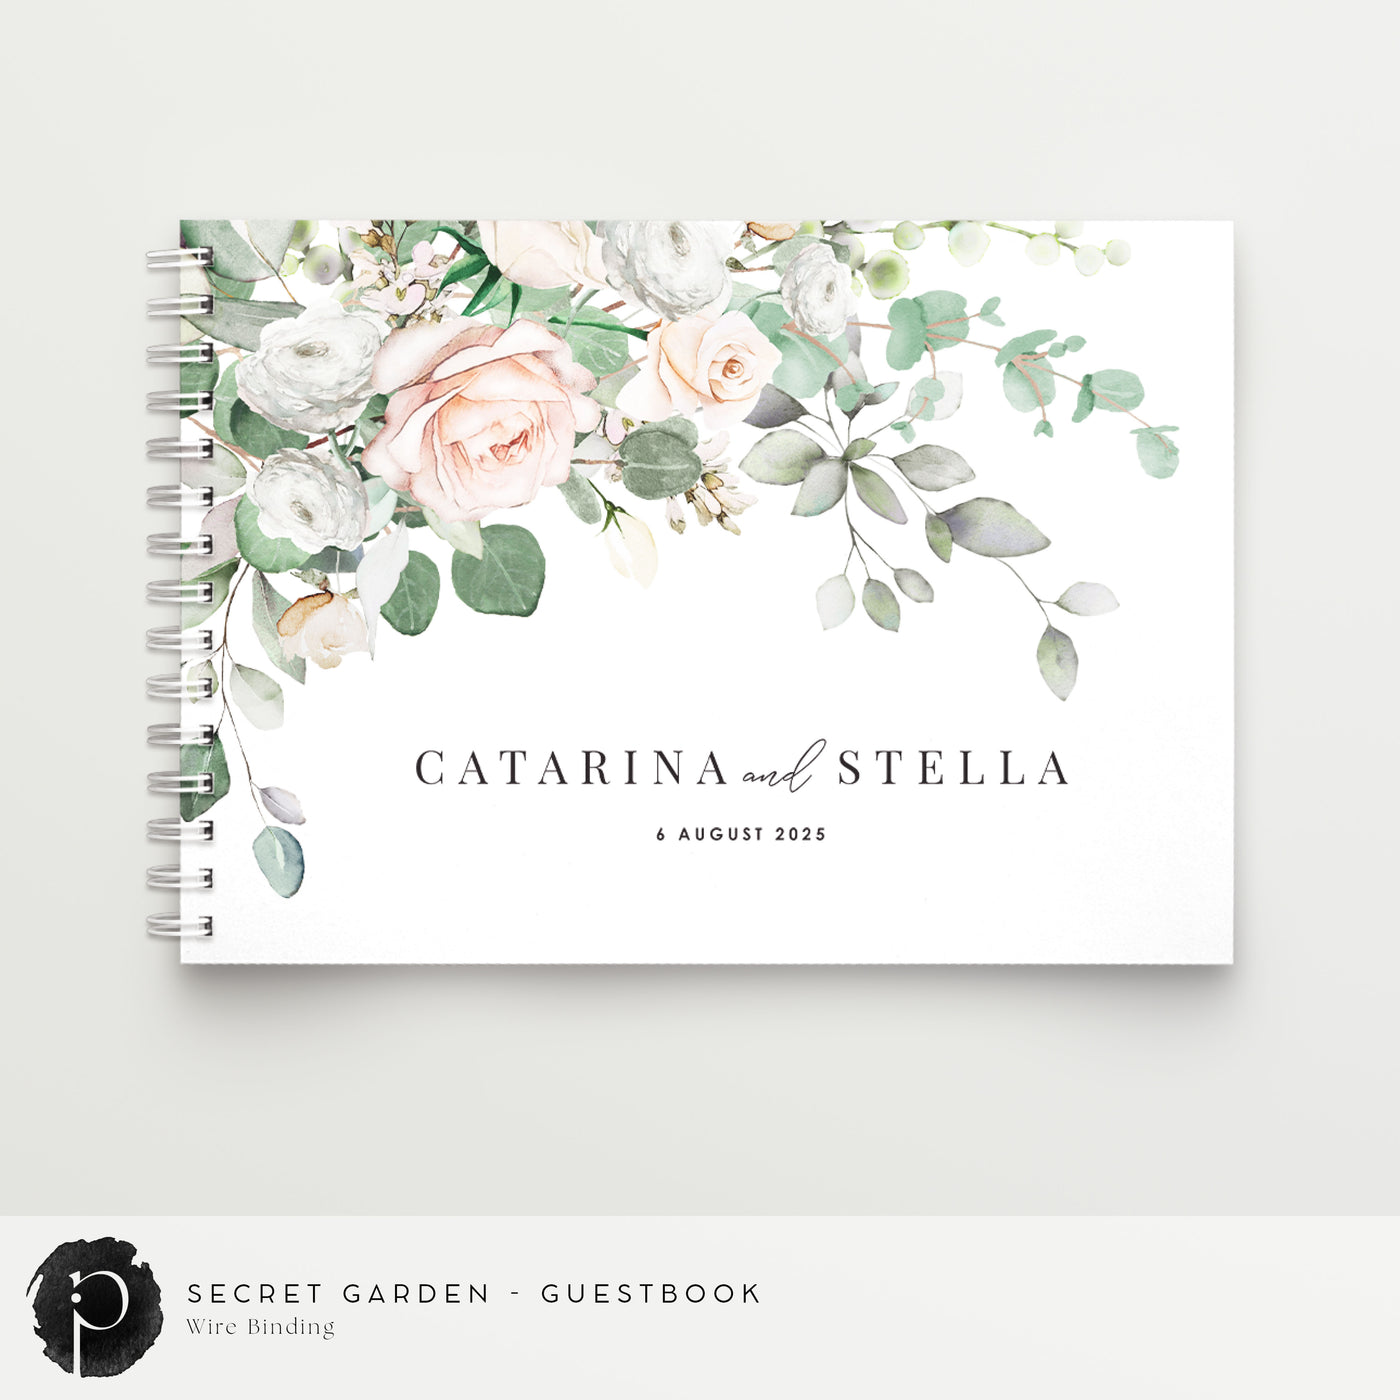 Secret Garden - Guestbook